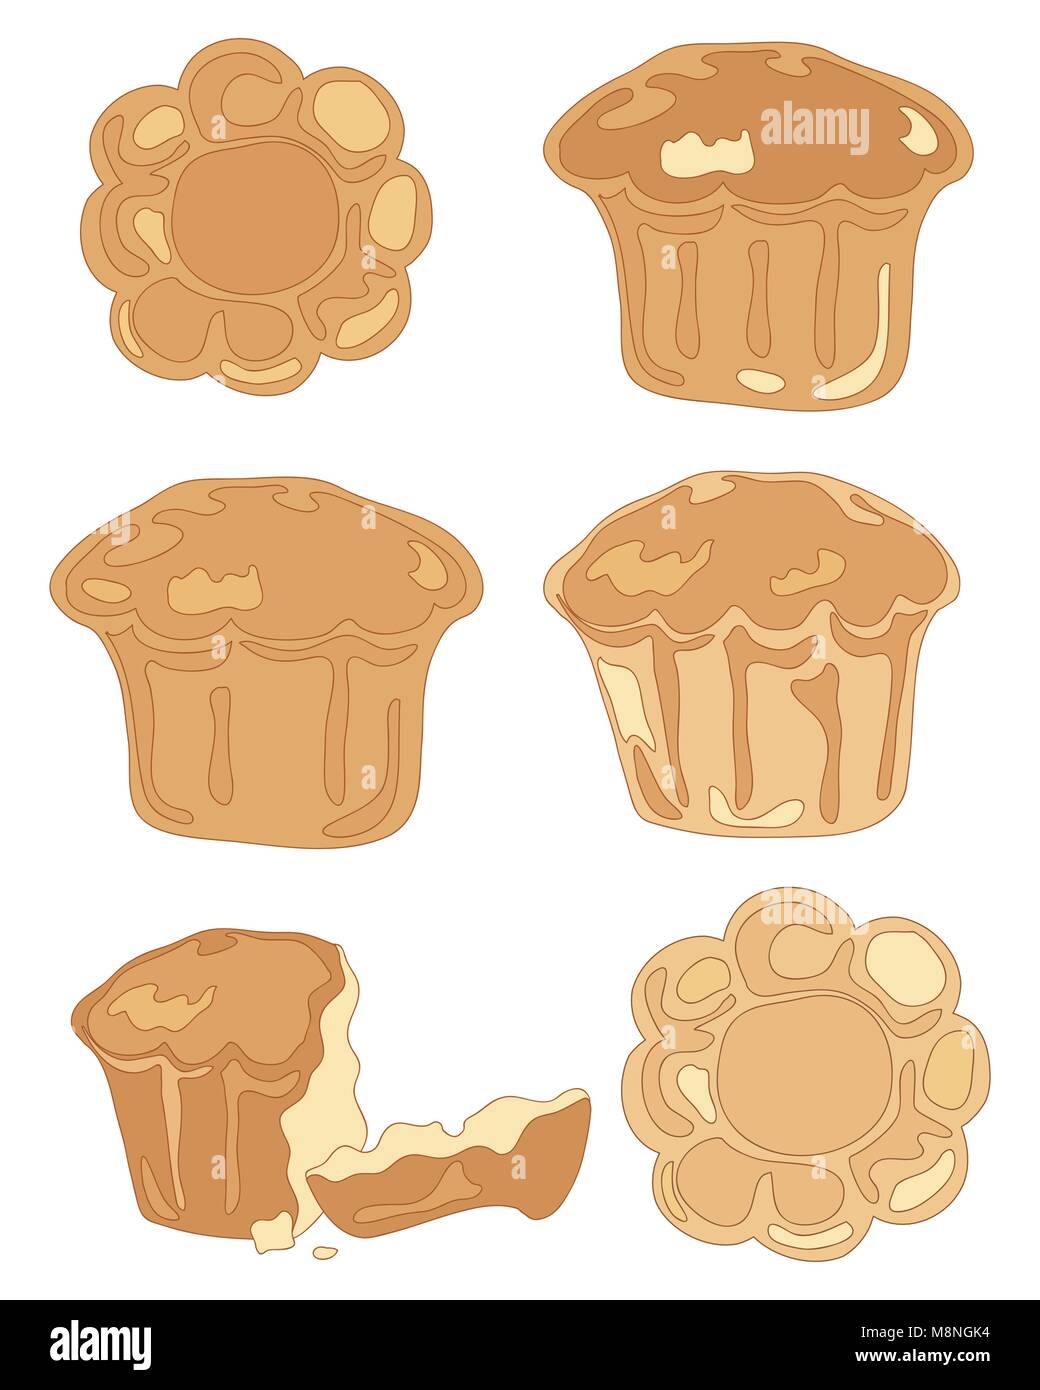 Un vecteur illustration en format eps 8 de différentes pâtisseries brioche en haut et de côté et a broken bun sur fond blanc Illustration de Vecteur